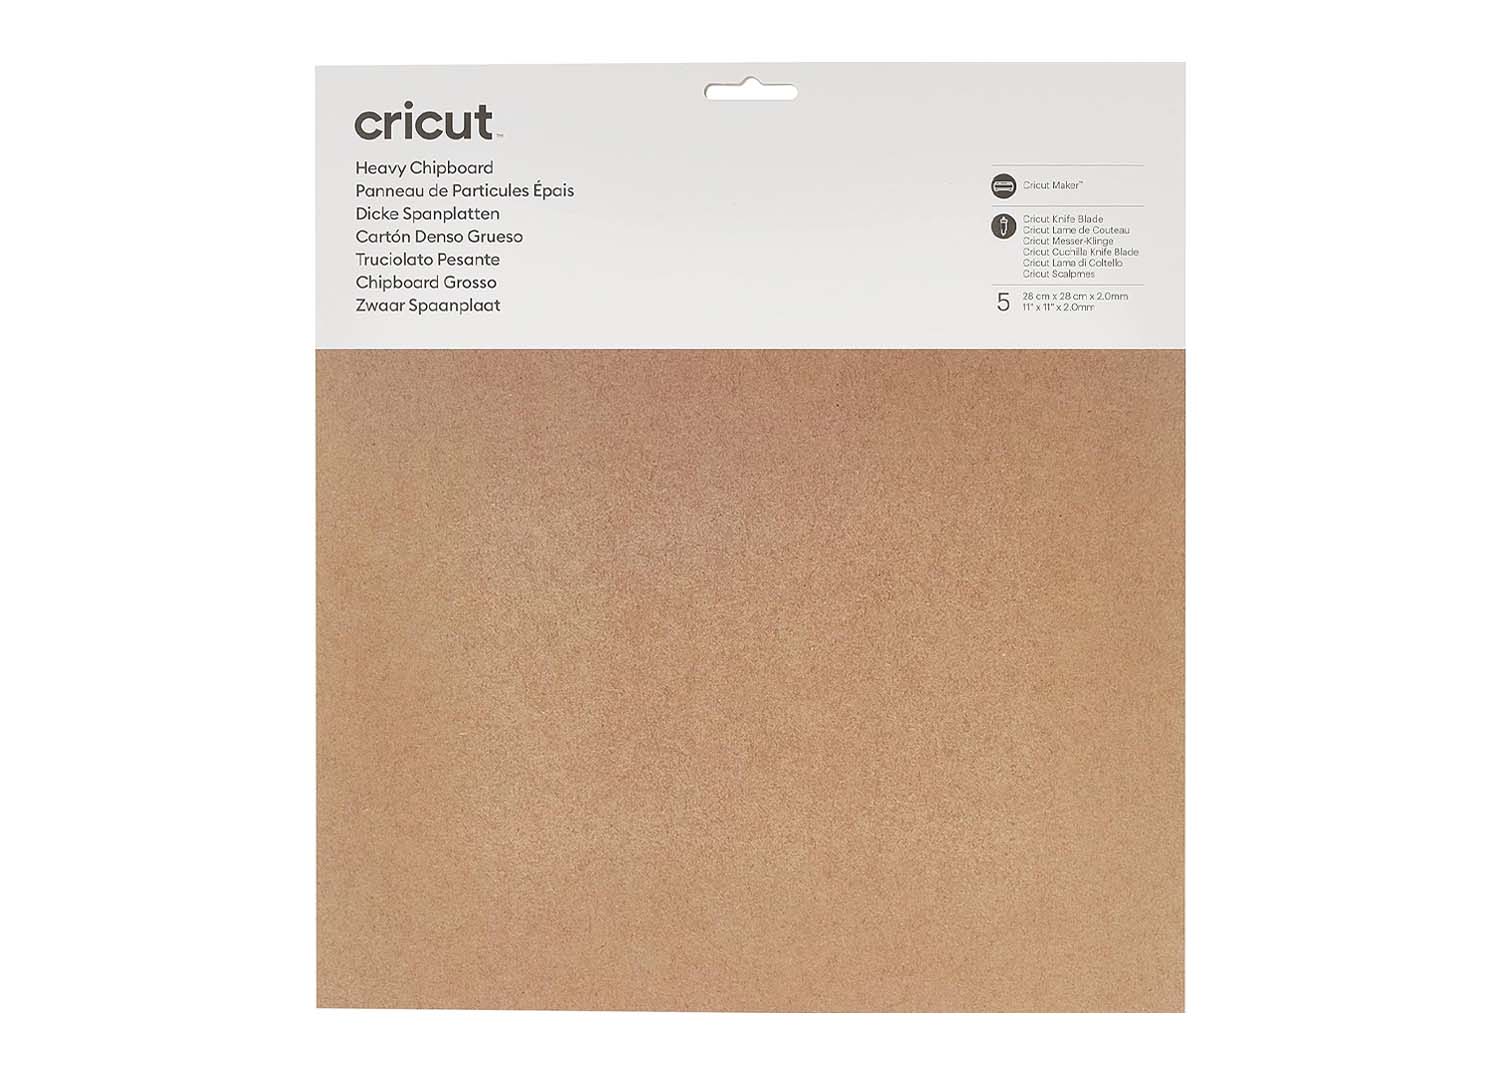 Cricut Cartone Pressato Chipboard Spessore 2mm - Necchi Shop Online